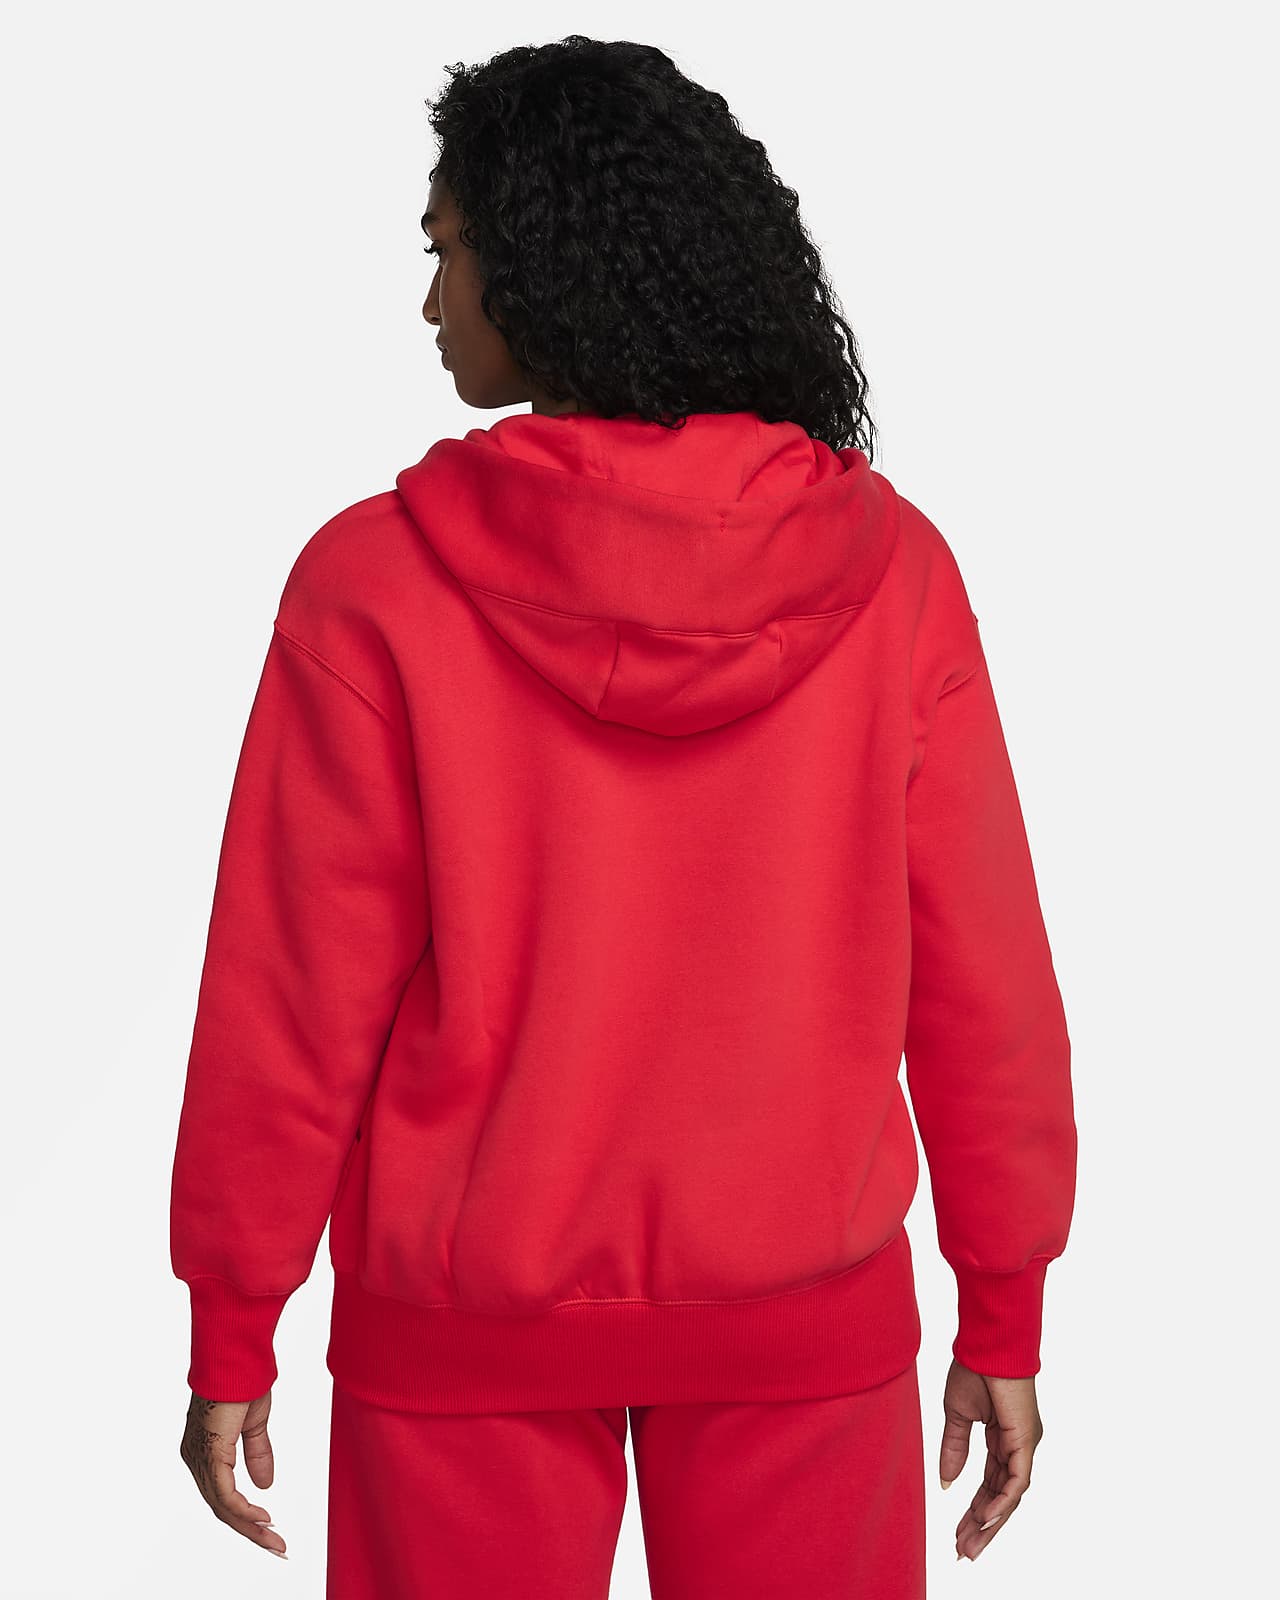 Mujer En Sudadera Roja Con Capucha De Nike Sosteniendo Piña · Foto de stock  gratuita